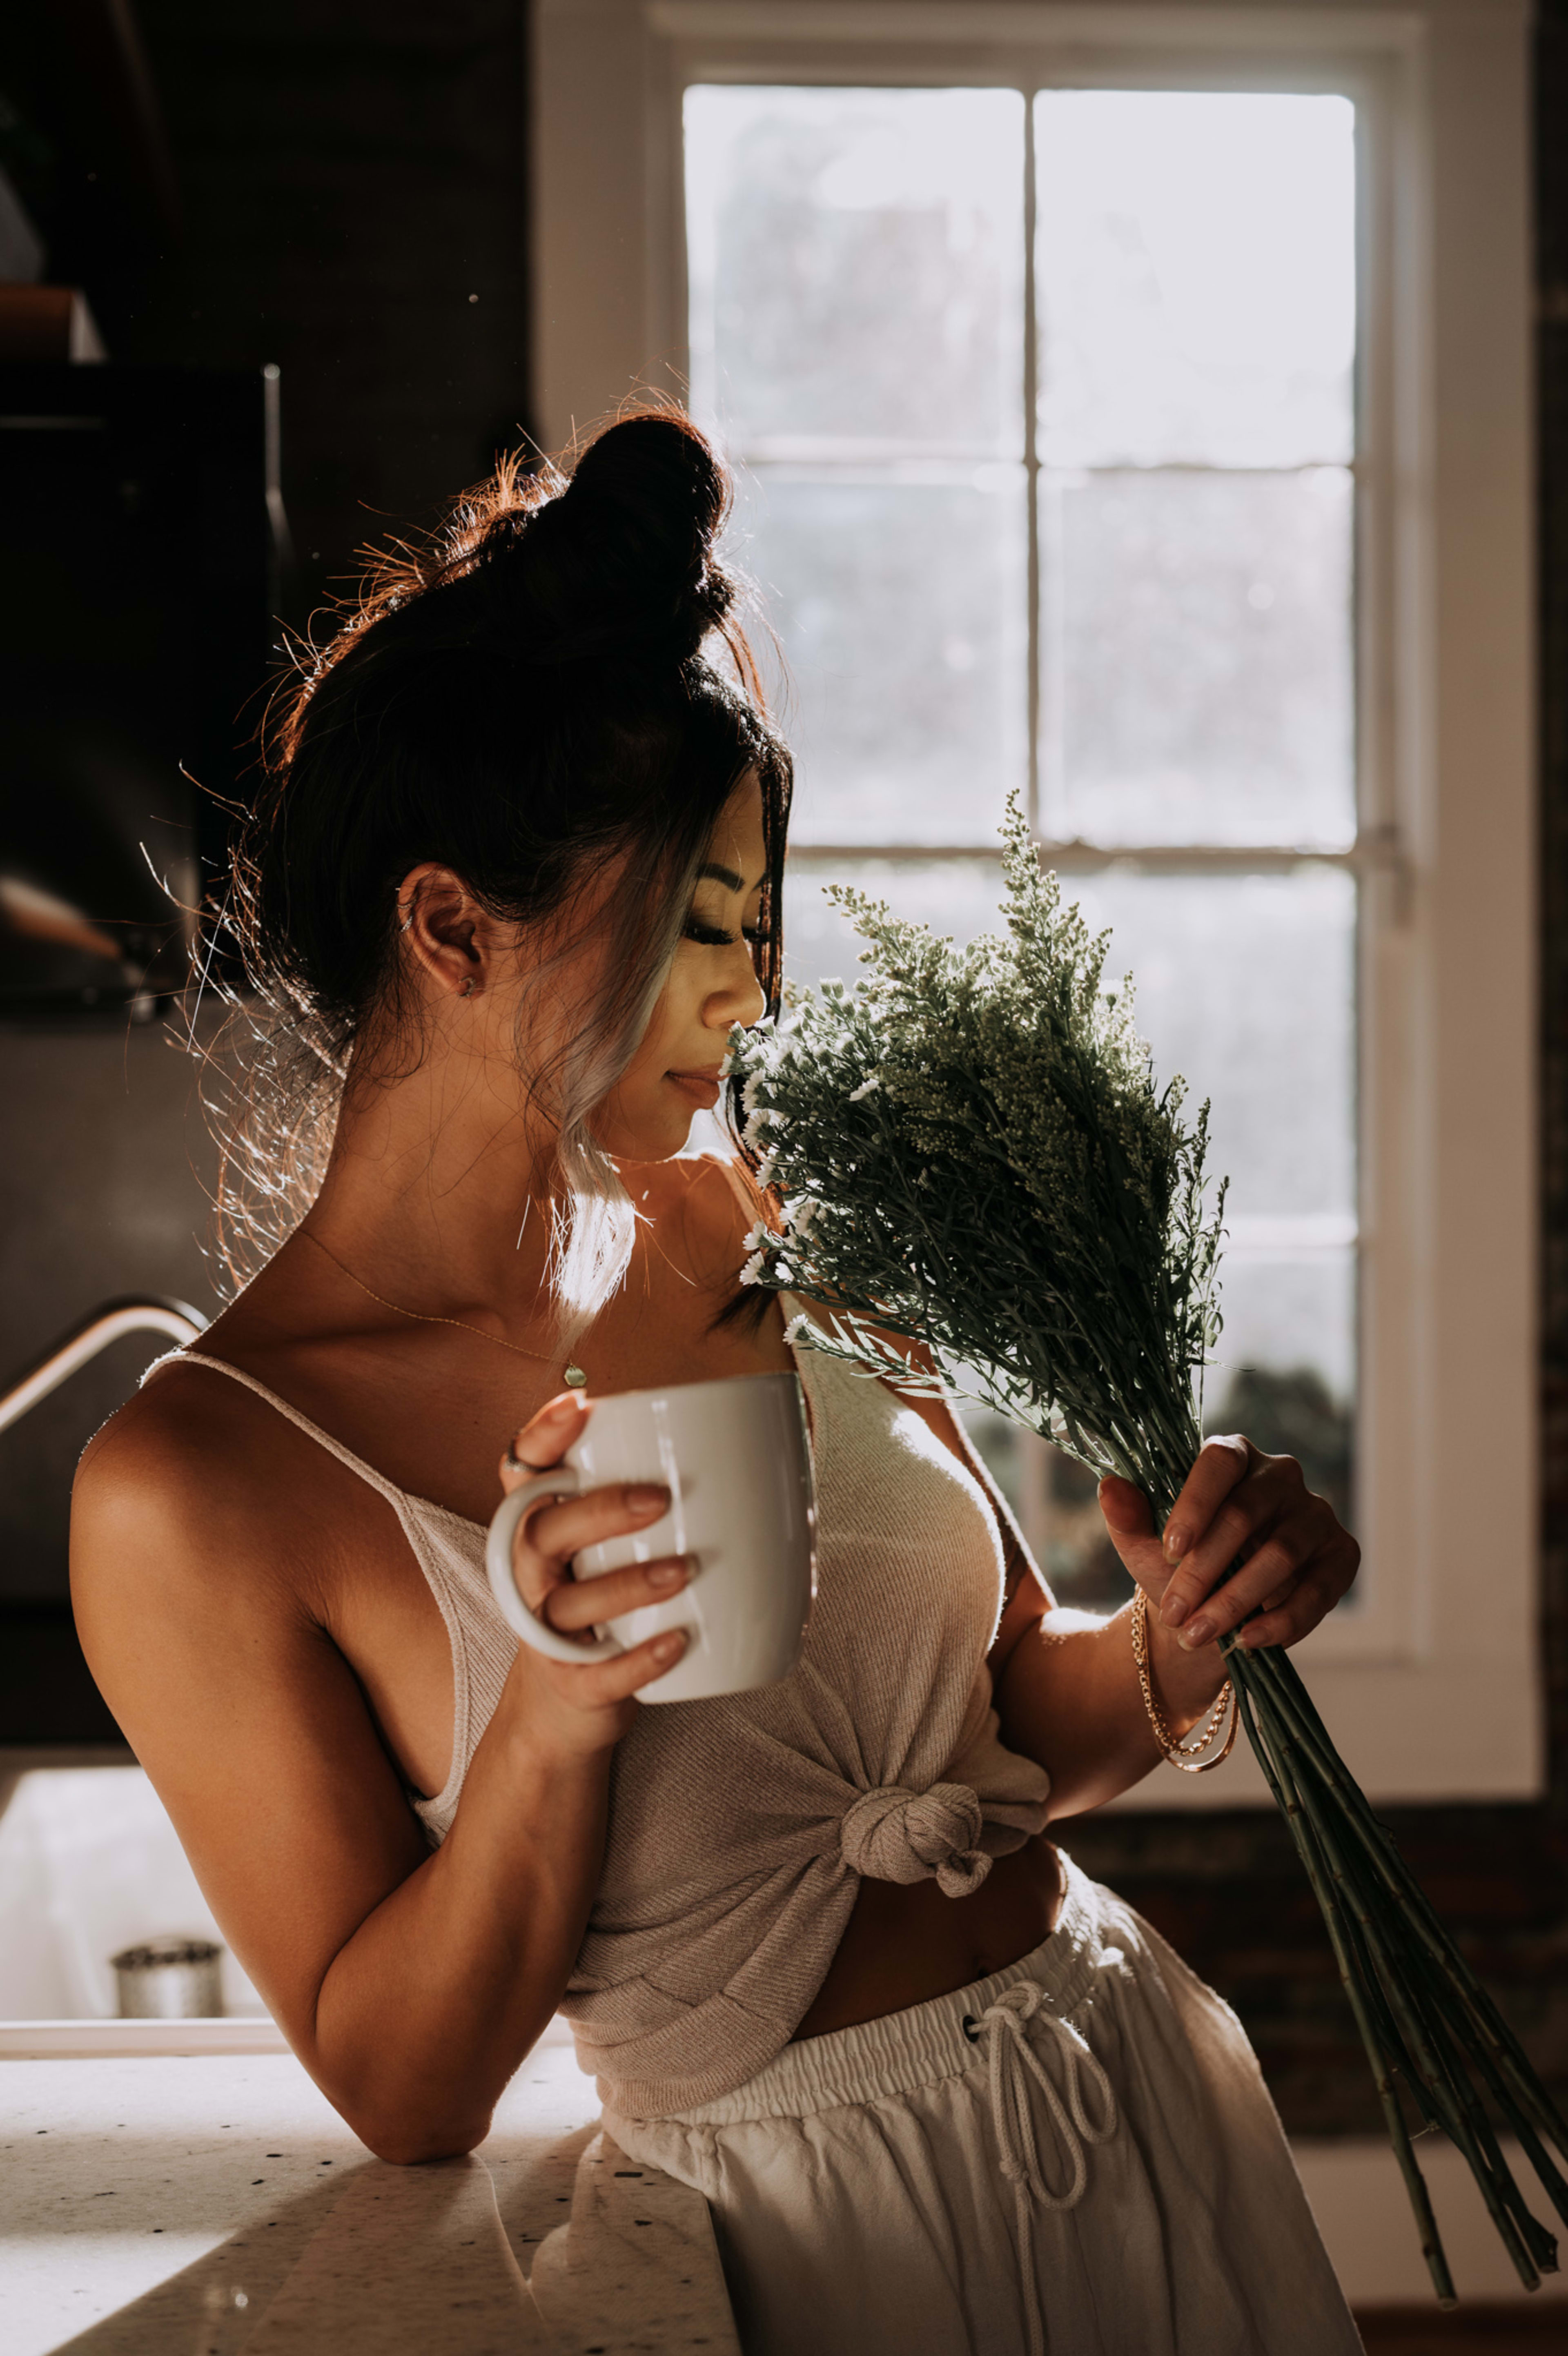 Una sesión de fotos con una mujer sosteniendo una taza de café y flores.